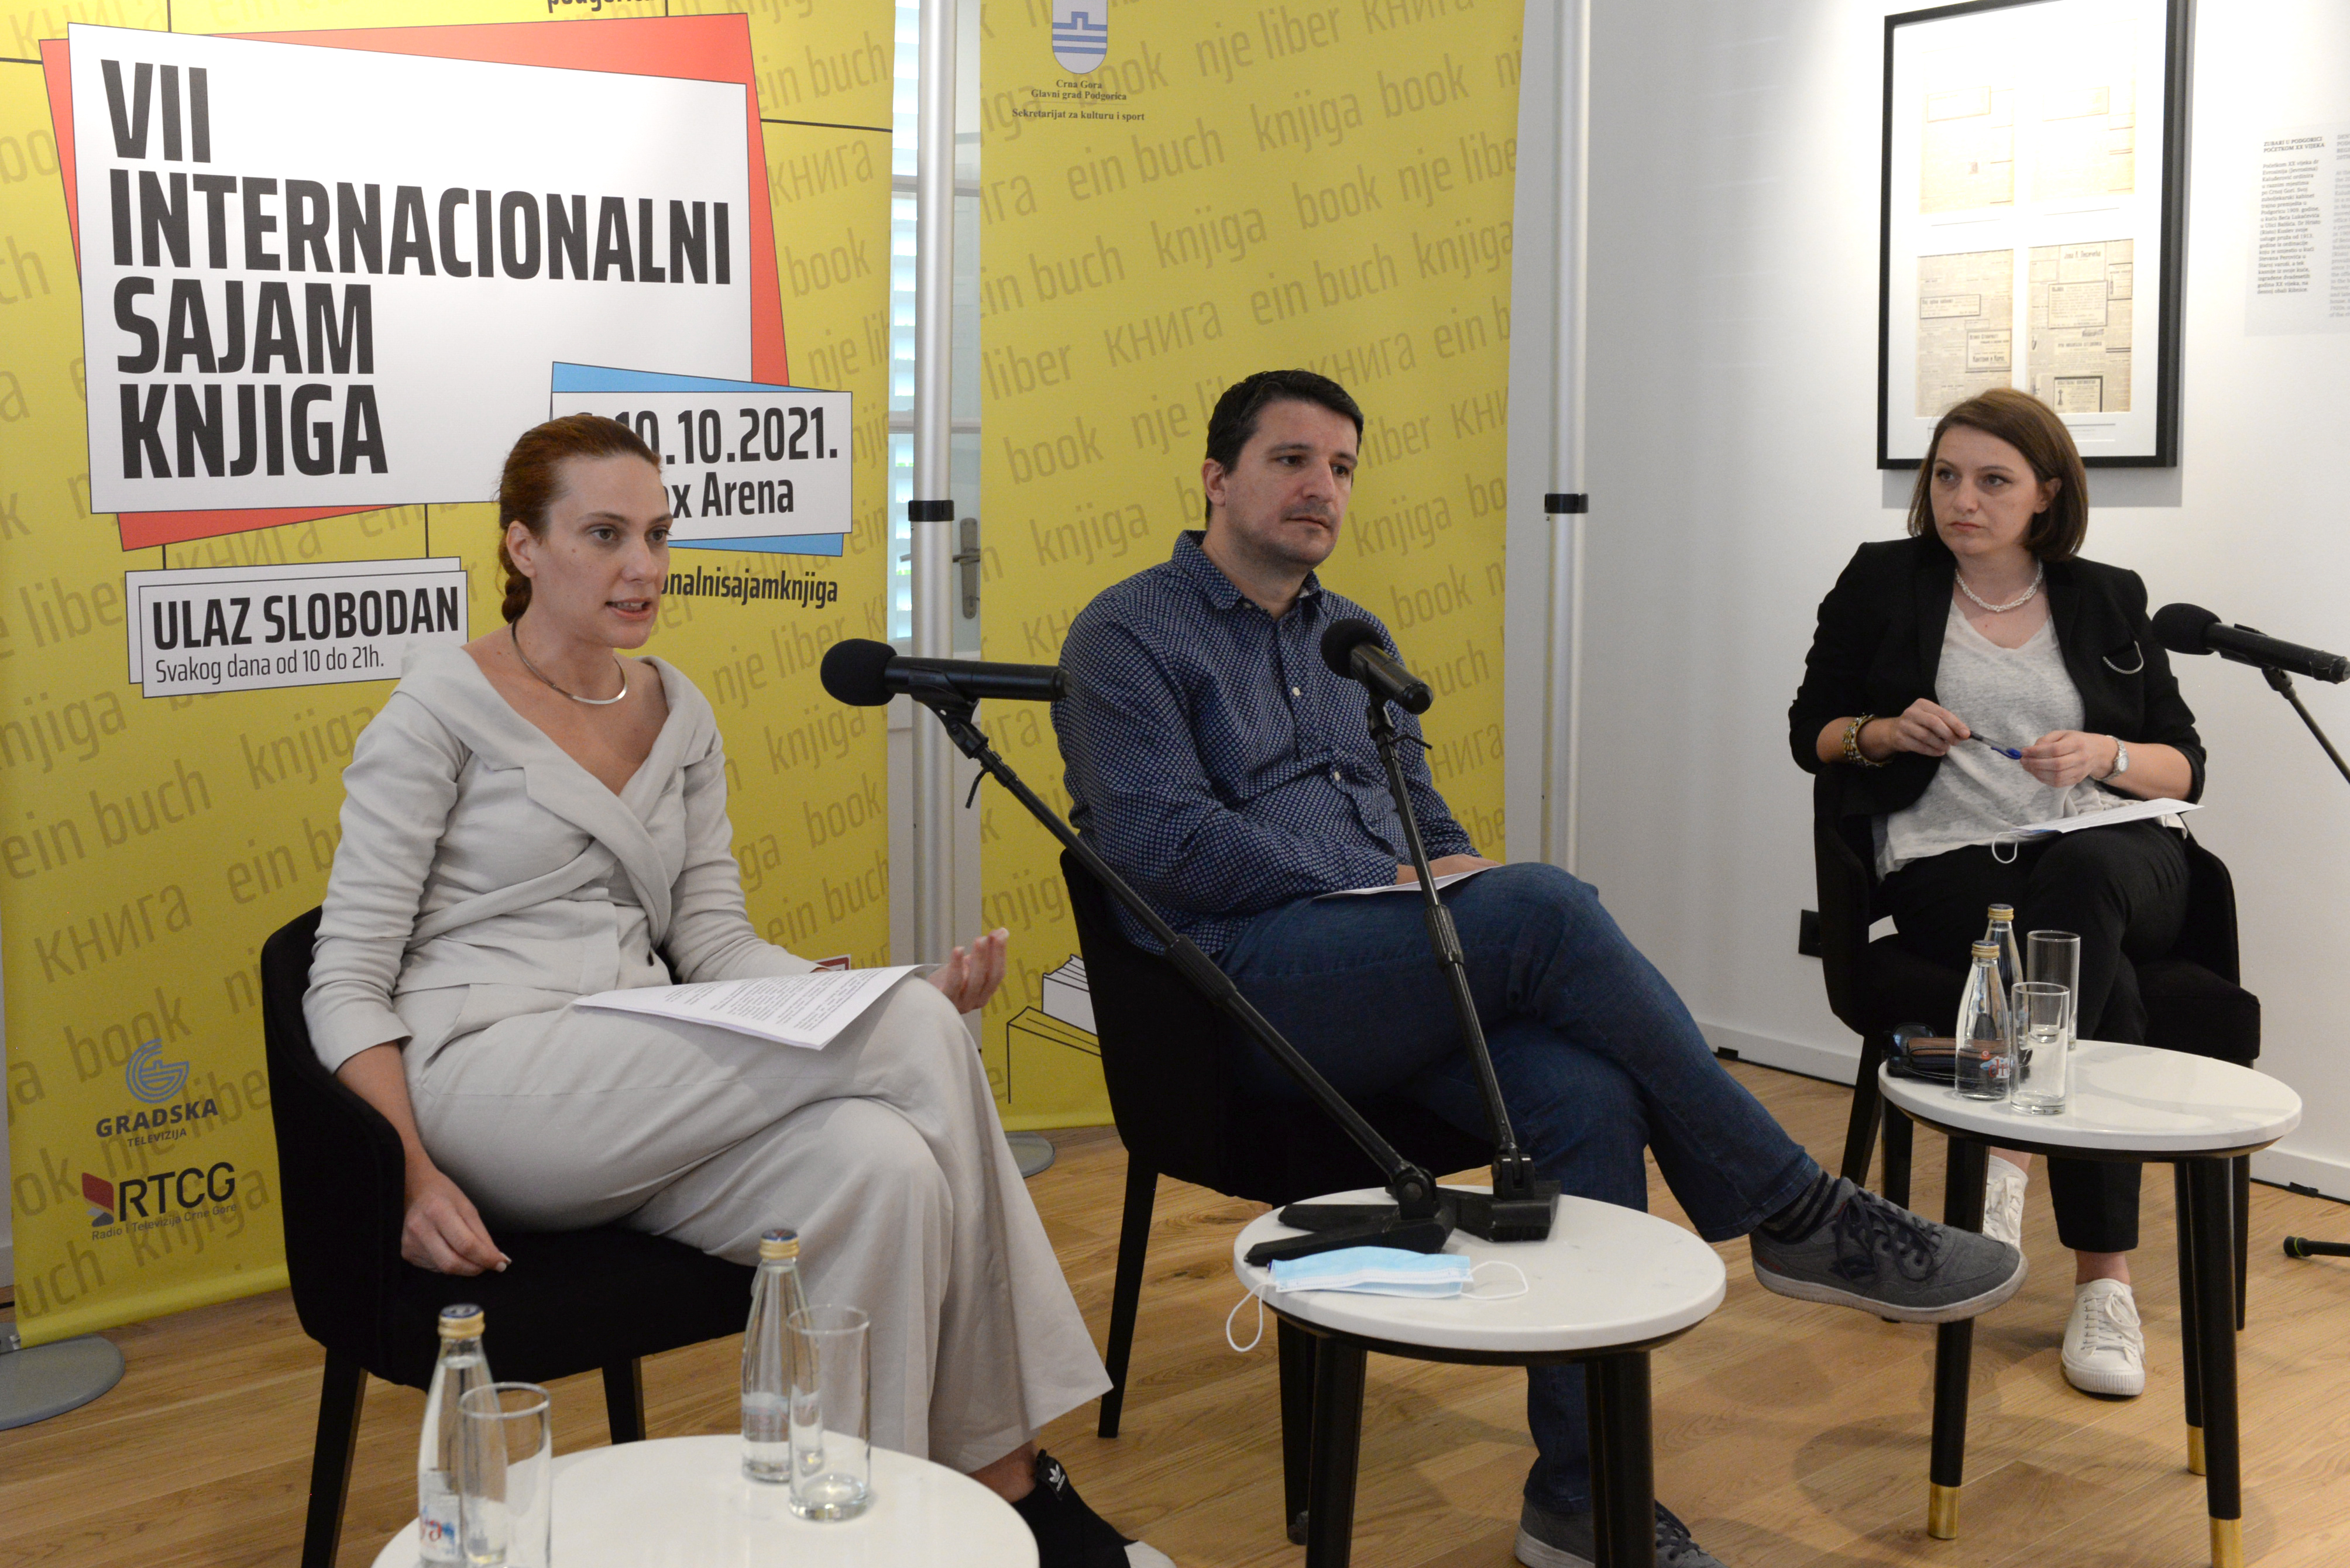 Mihael Martens otvara VII internacionalni sajam knjiga u Podgorici